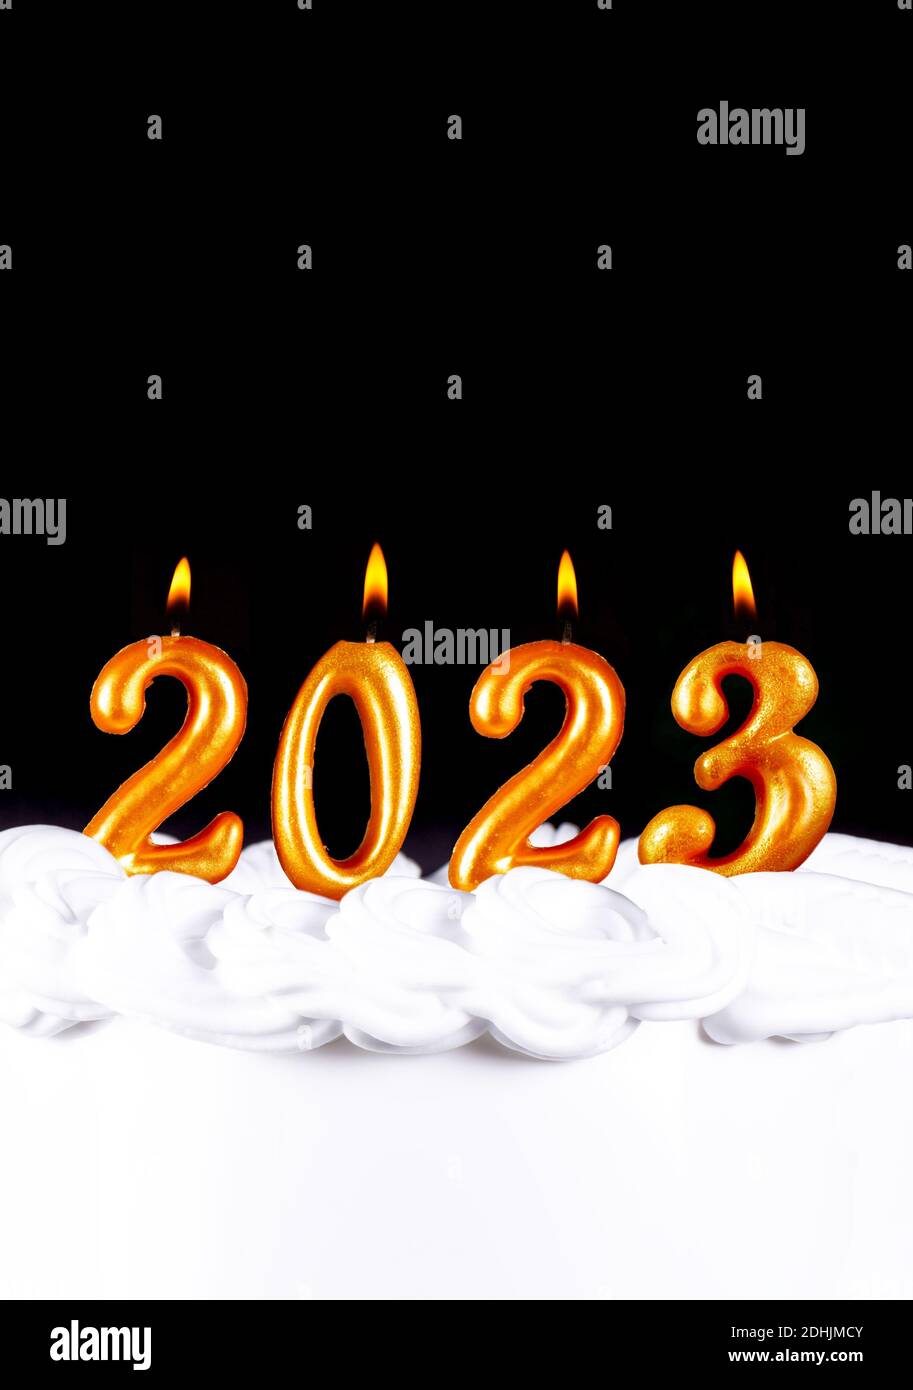 Happy New Year 2024: Chào đón năm mới 2024 với những hình ảnh đầy ấn tượng và cảm xúc tươi sáng. Bức tranh sẽ mang đến cho bạn cảm giác hân hoan, đầy hy vọng và tiếp thêm năng lượng cho những thách thức mới trong năm mới này.